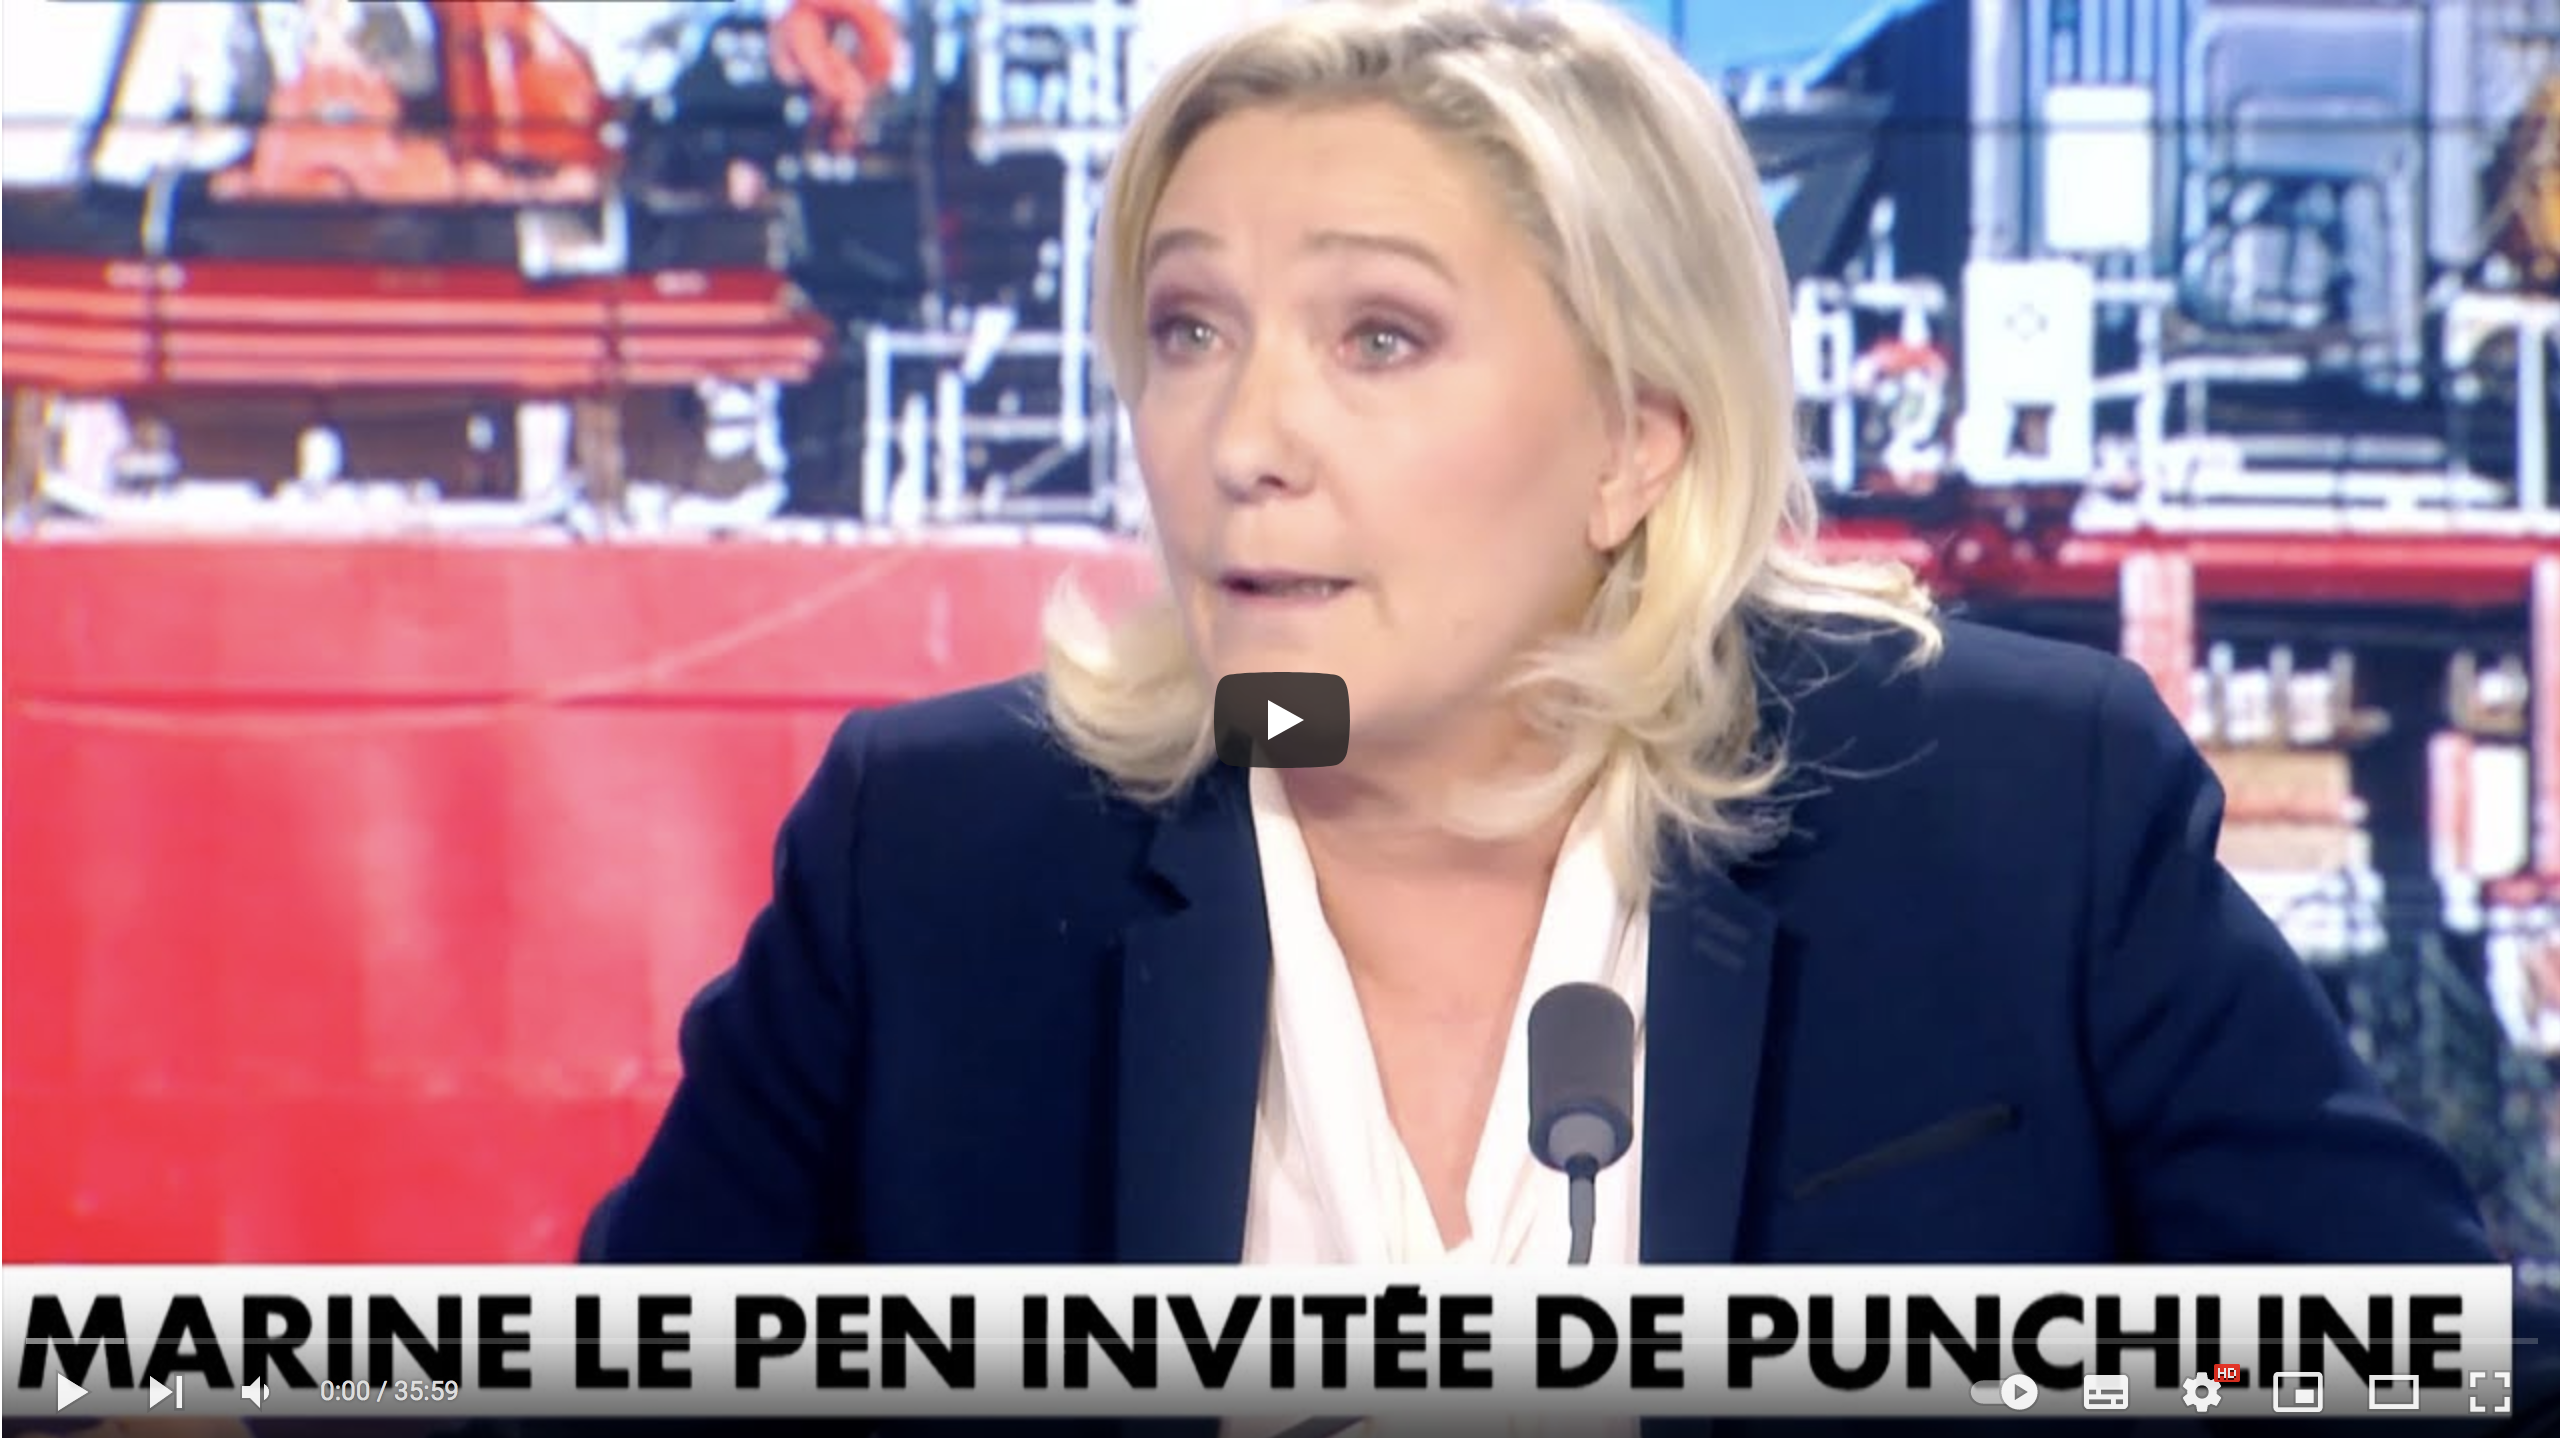 Marine Le Pen donne une leçon de gouvernance à Emmanuel Macron (VIDÉO)